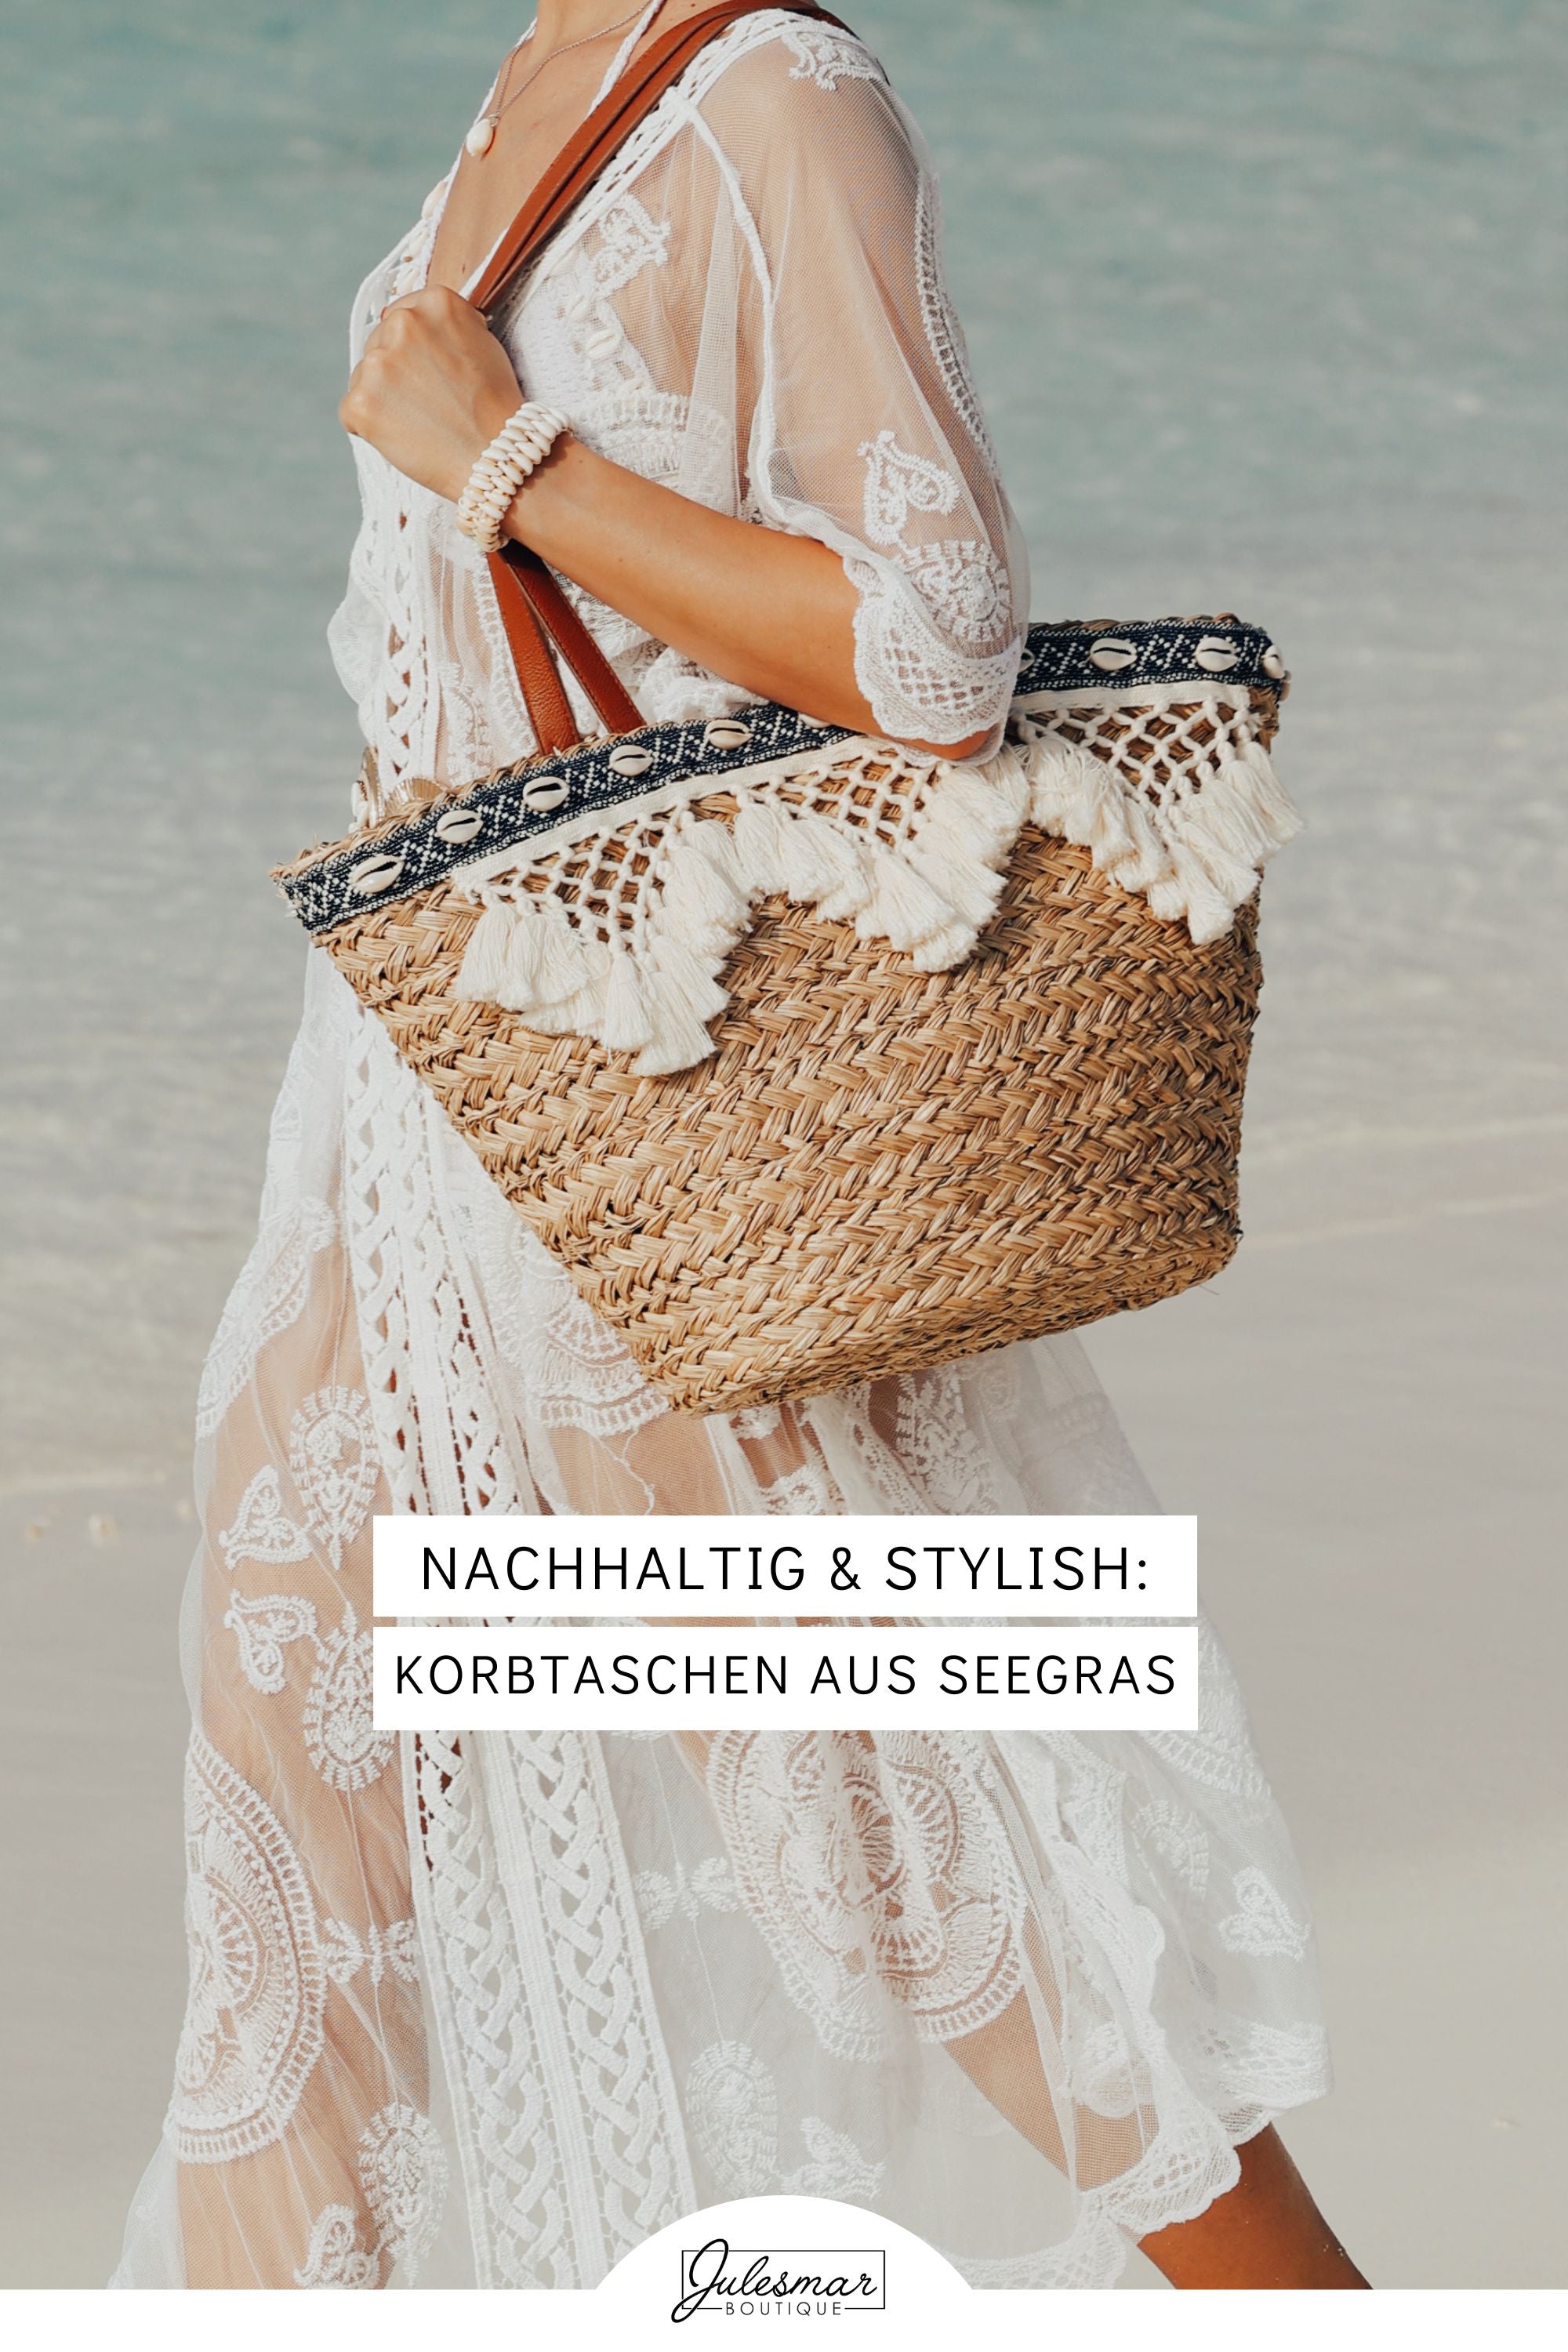 Sustainable & stylish: braided basket bags